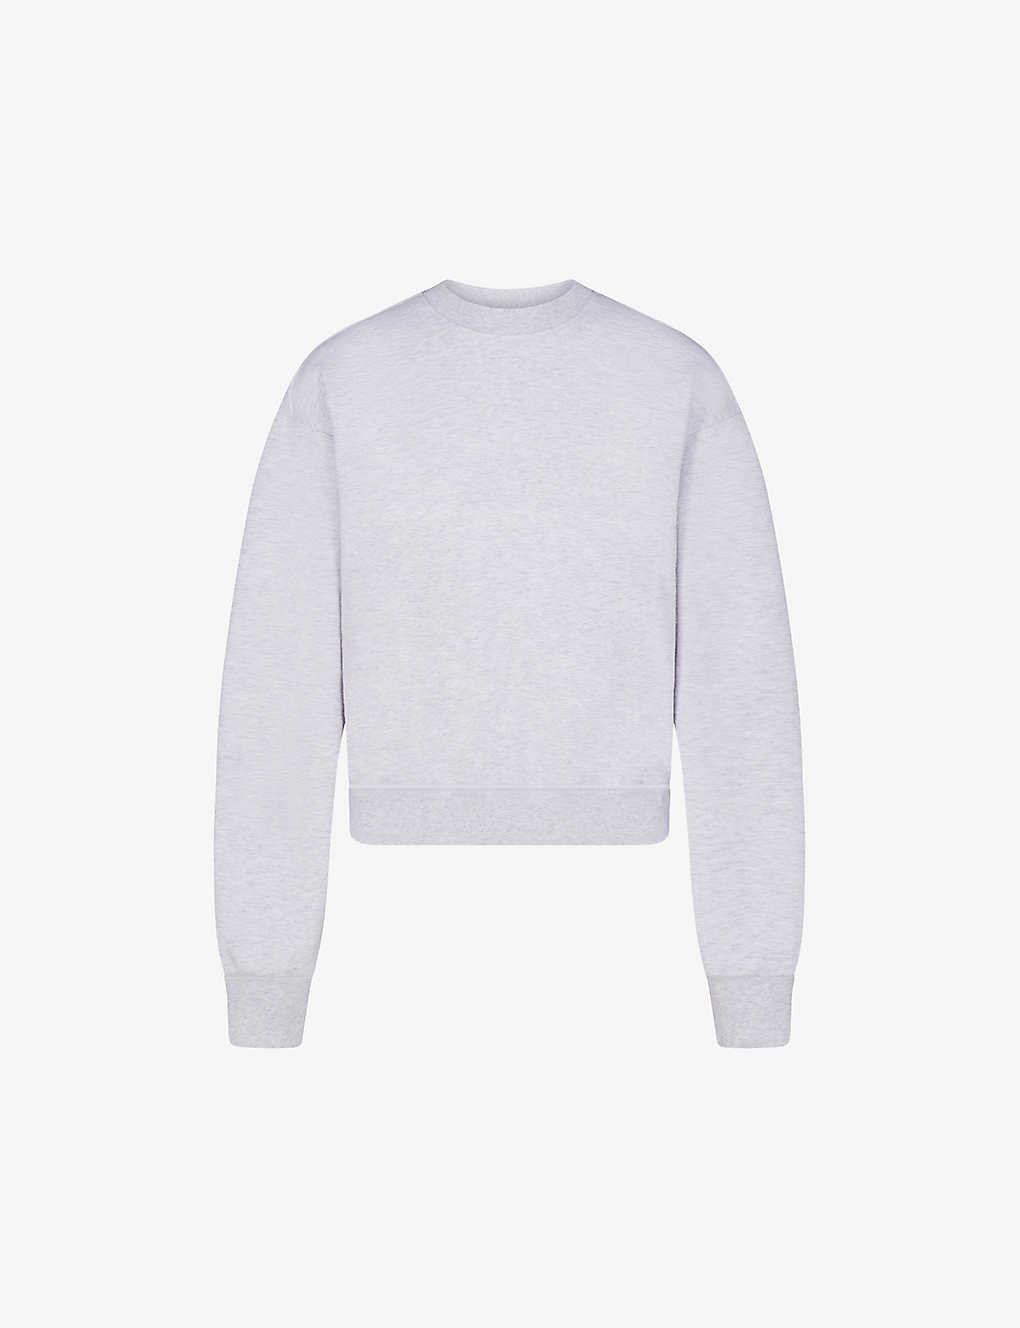 Shop Skims Women's Light Heather Grey Round-neck Cotton-blend Sweatshirt